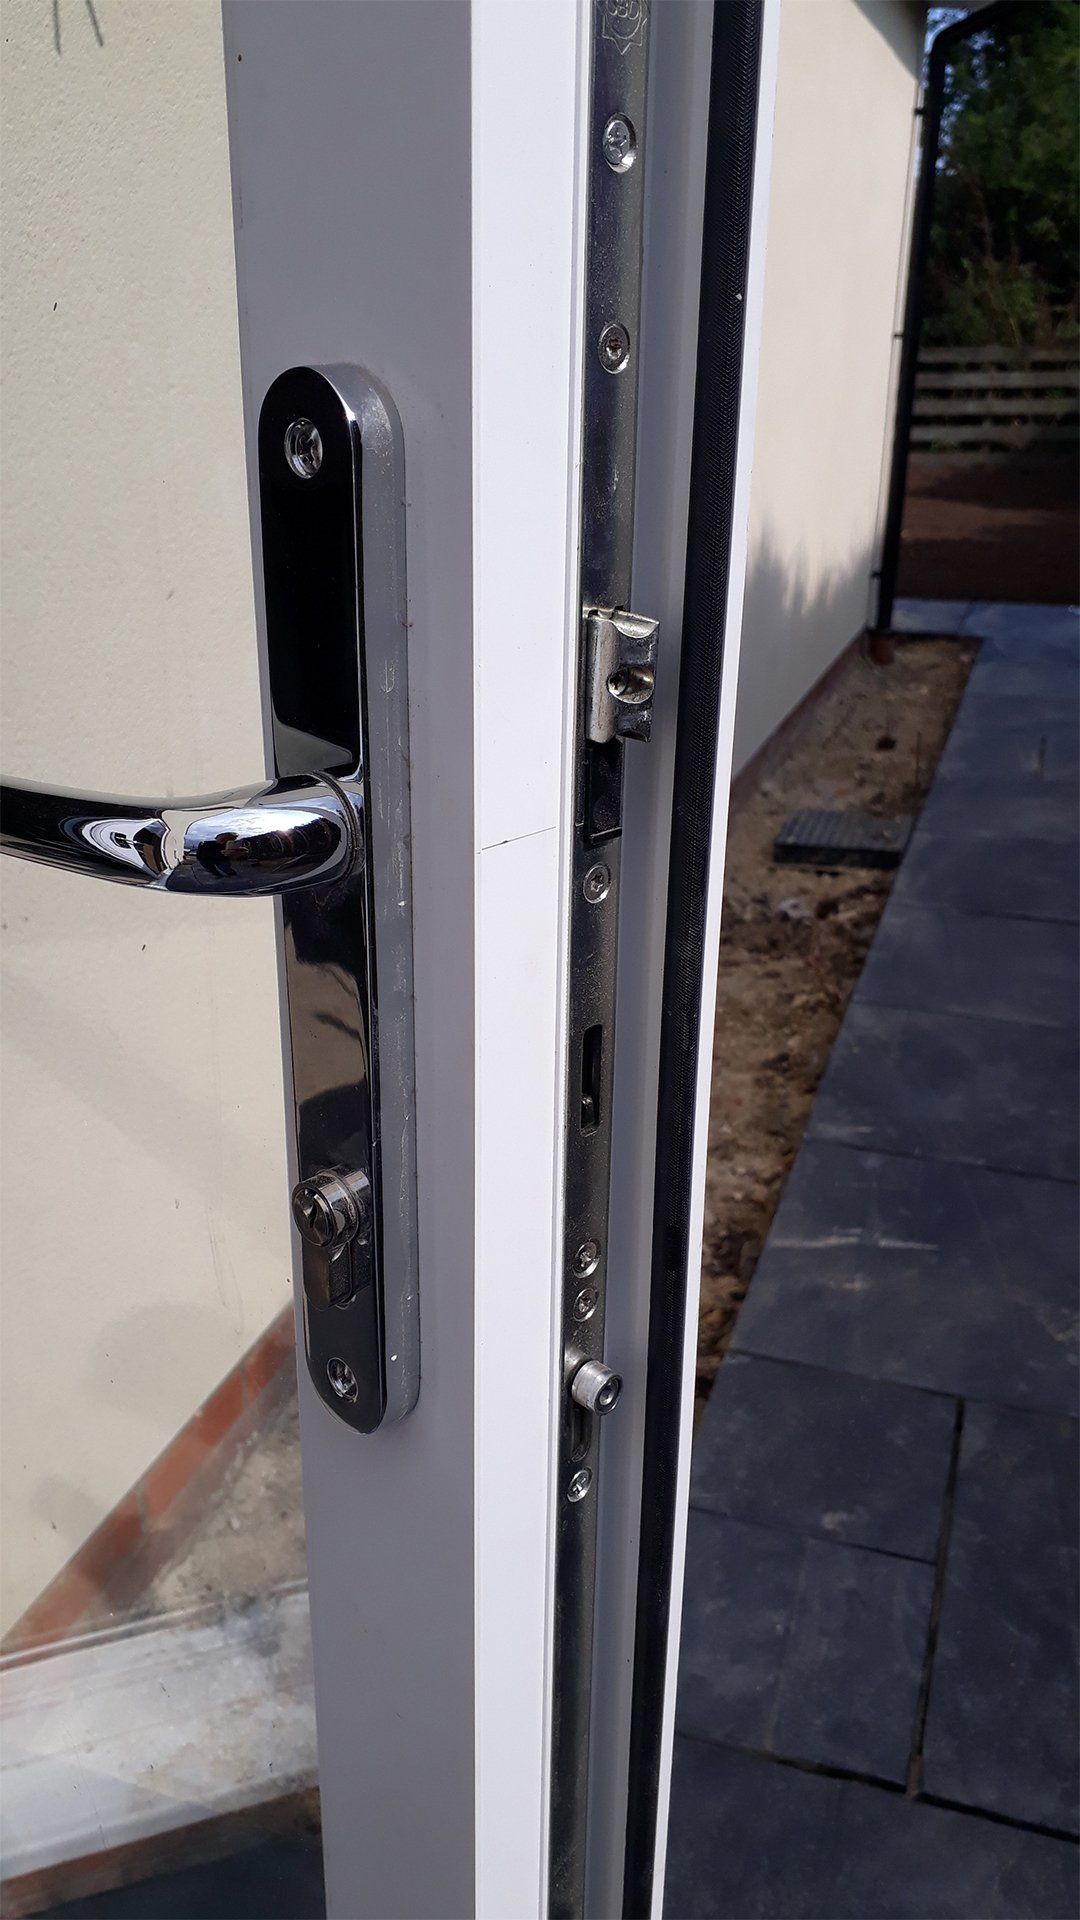 Upvc Door Repairs In Leeds, PVC Door Lock Repairs Leeds westyorkshire, Upvc Door Lock Replacement Service, Upvc Door Locksmiths Leeds, Leeds Upvc Door Repairers, Door Lock Repairs In Leeds Westyorkshire